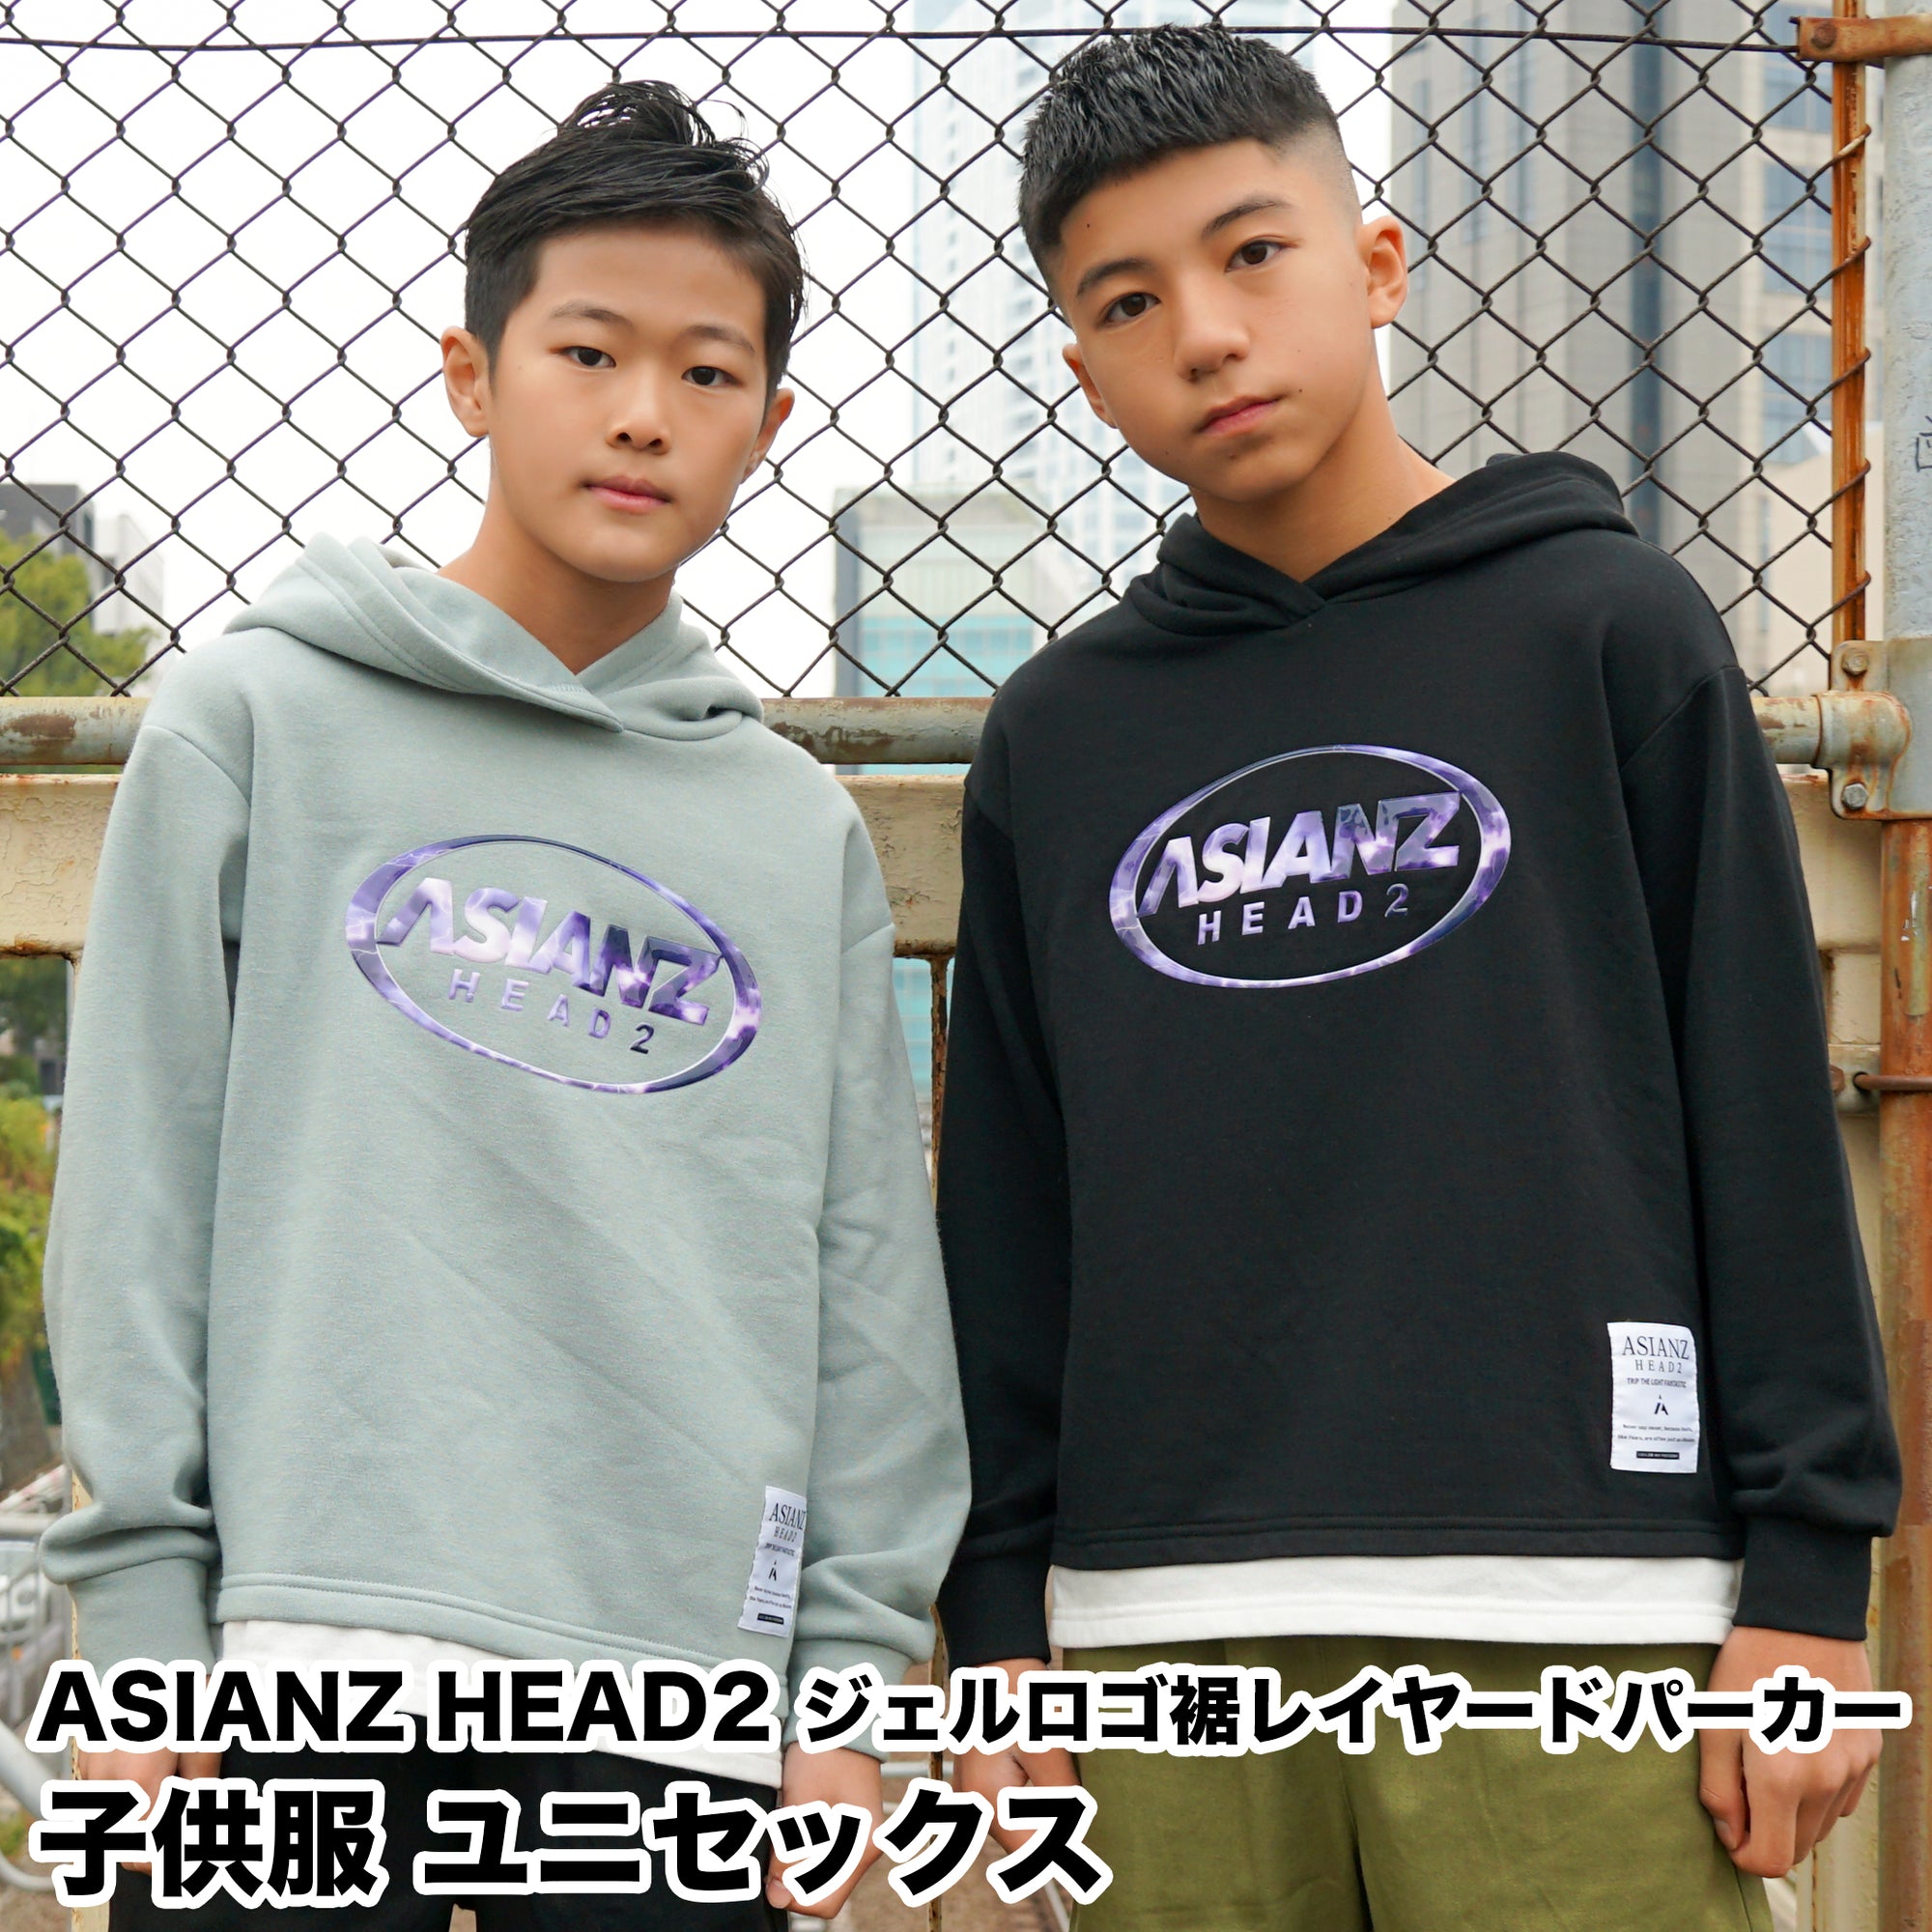 (40%オフ! セール商品)ASIANZ HEAD2 ジェルロゴ裾レイヤードパーカー キッズウェアー